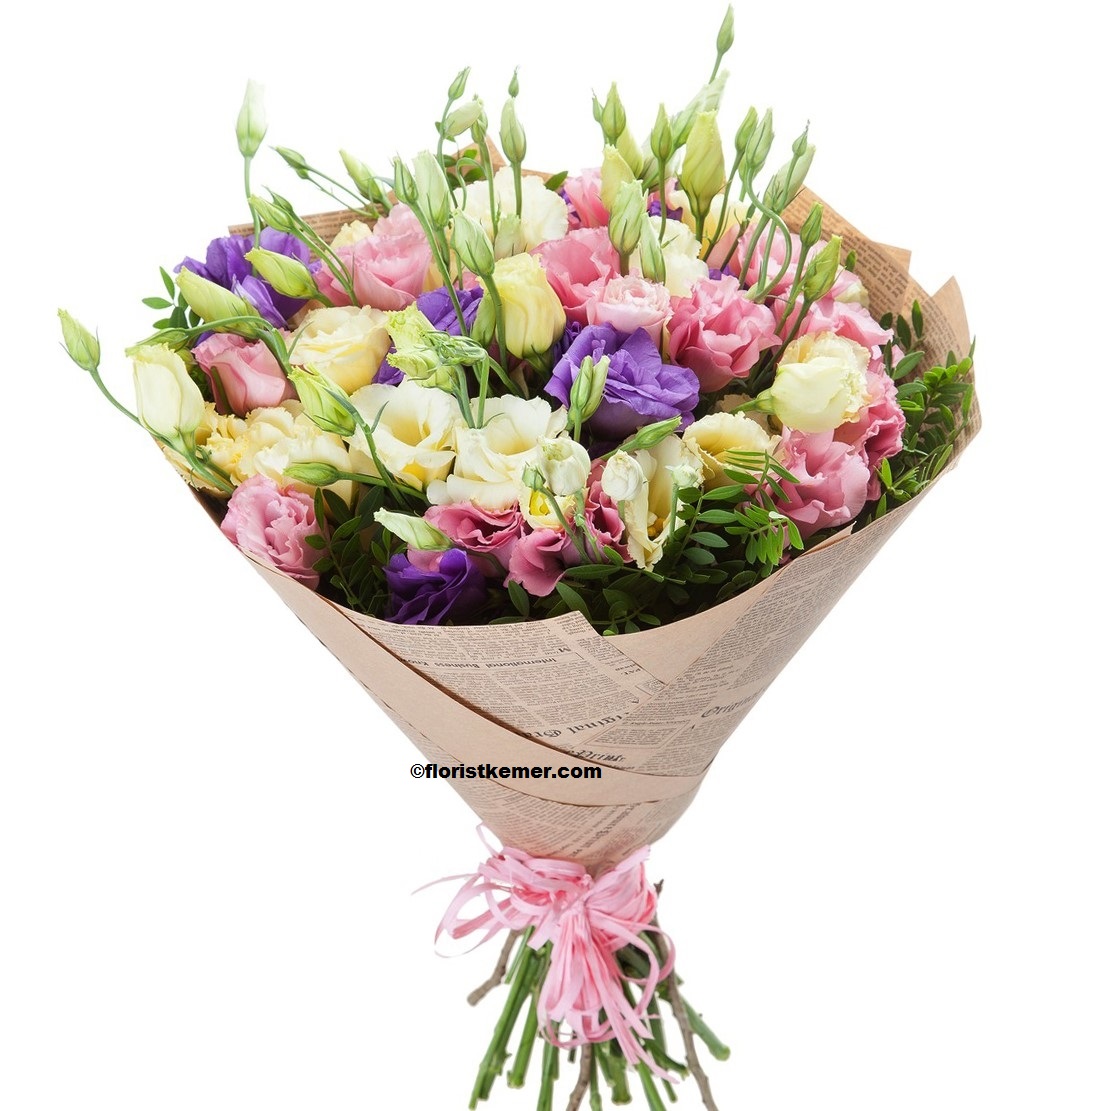  Kemer Blumenlieferung Lisianthus Bouquet